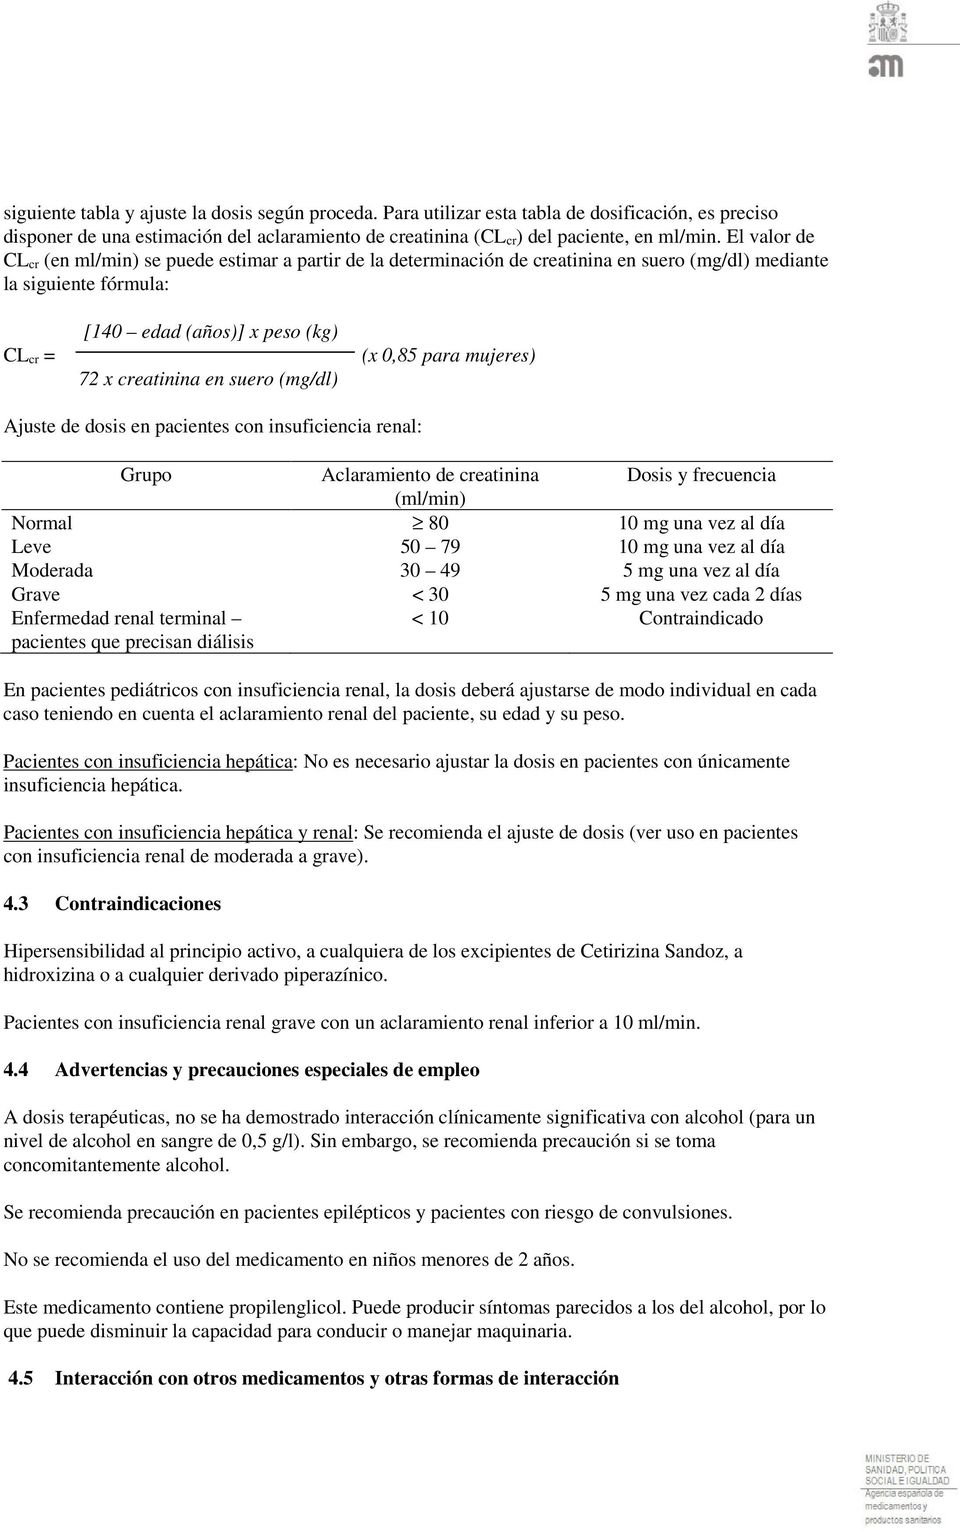 suero (mg/dl) (x 0,85 para mujeres) Ajuste de dosis en pacientes con insuficiencia renal: Grupo Aclaramiento de creatinina Dosis y frecuencia (ml/min) Normal 80 10 mg una vez al día Leve 50 79 10 mg